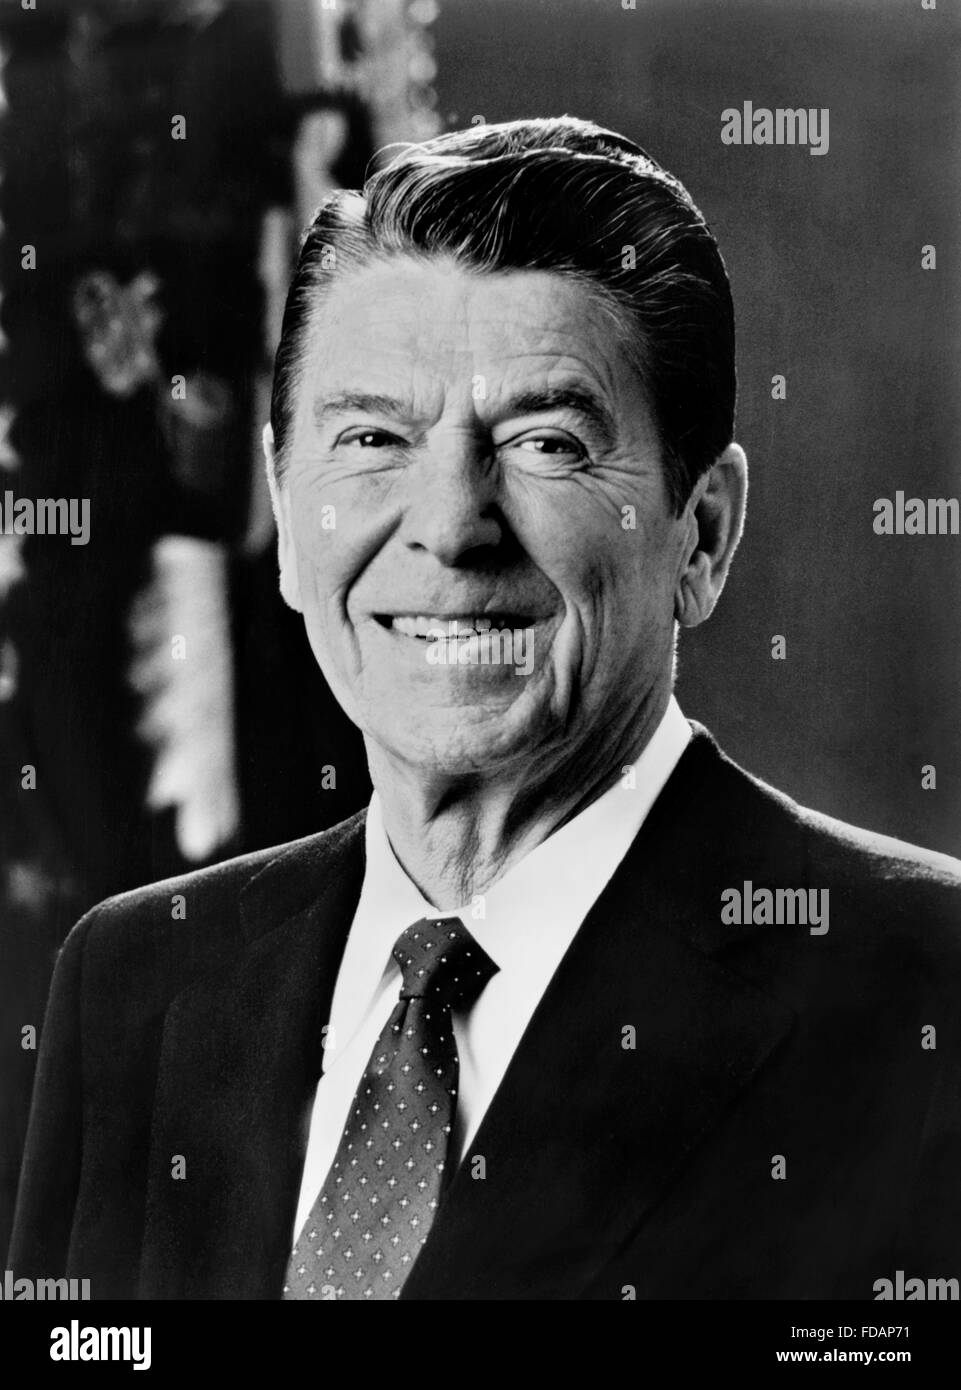 Ronald Reagan. Offizielle weiße Haus Porträt von Ronald Reagan, 40. Präsident der USA, c.1981-1983 Stockfoto